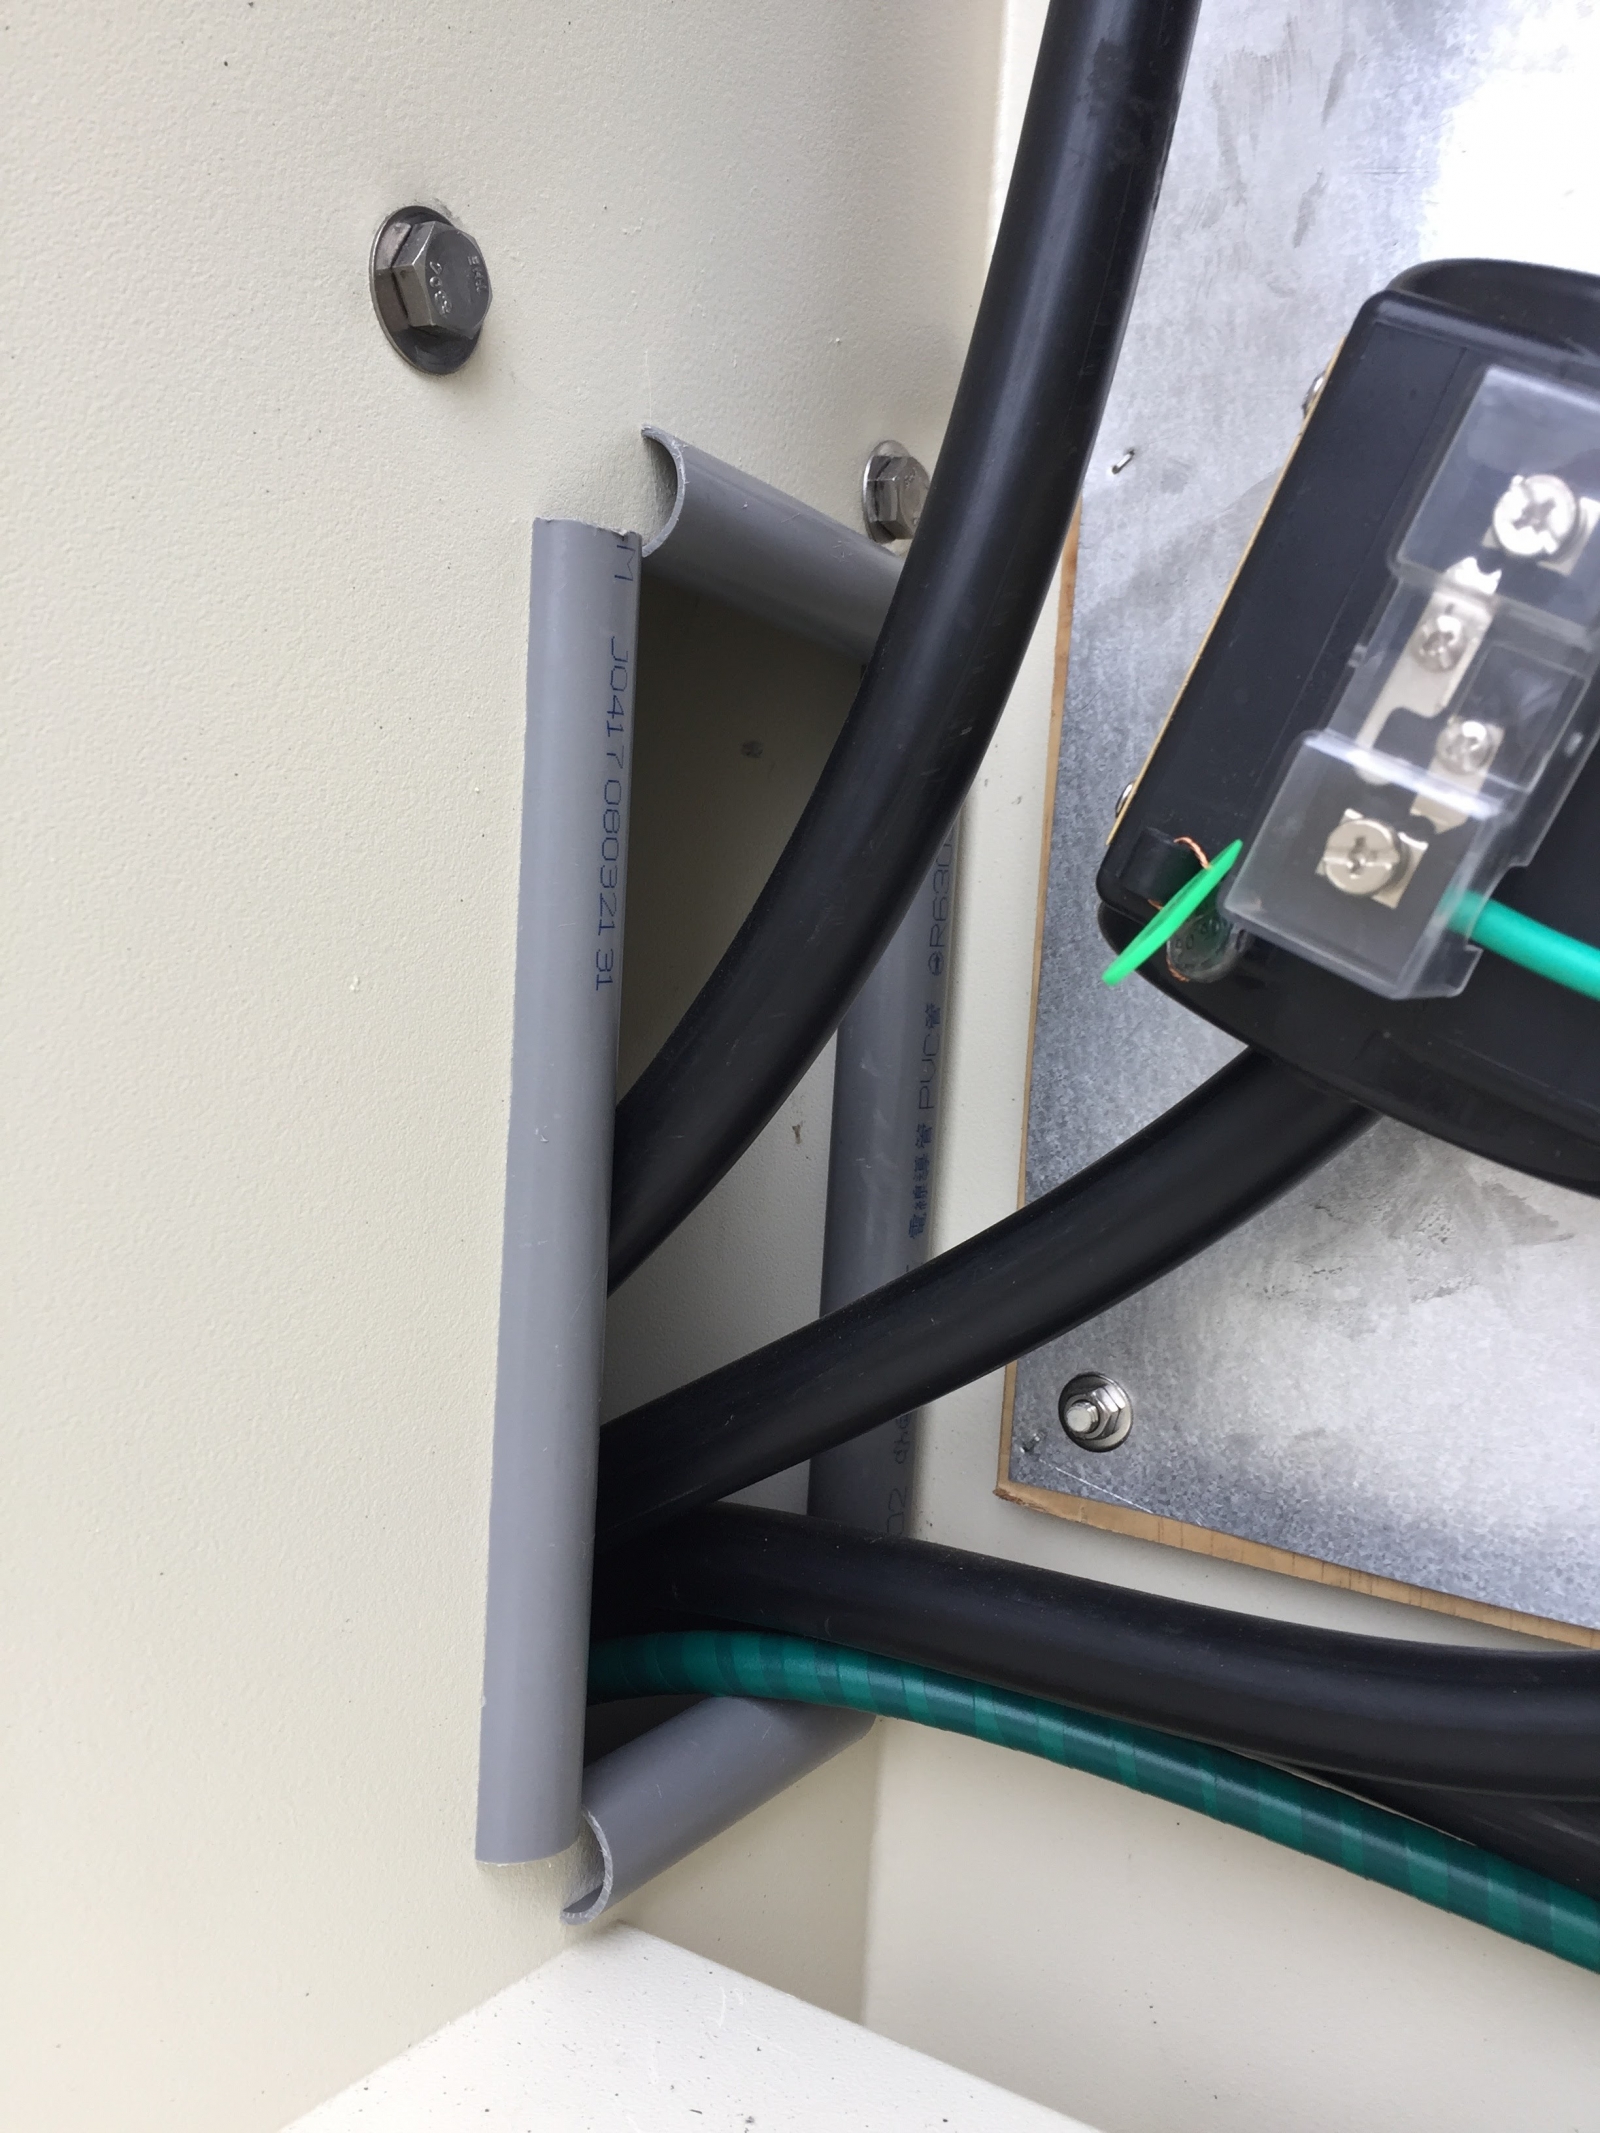 線纜保護措施完善，預防任何可能漏電的狀況 